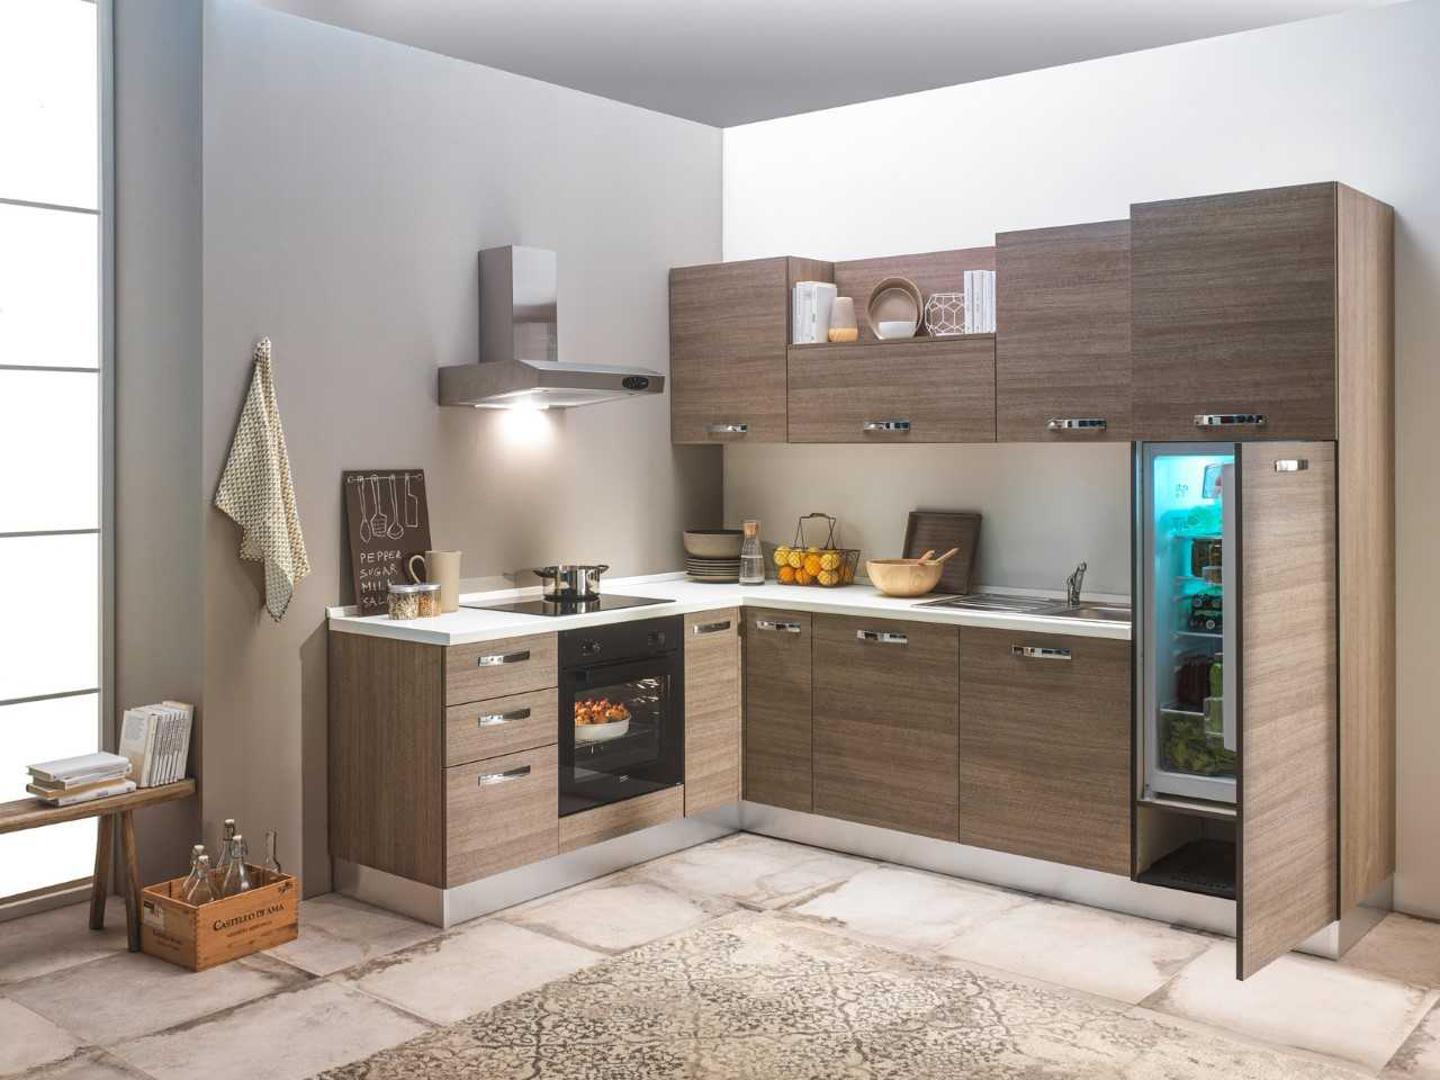 Kuhinje u L među najpopularnijim su modelima posljednjih godina, posebno u prostorima otvorenog koncepta